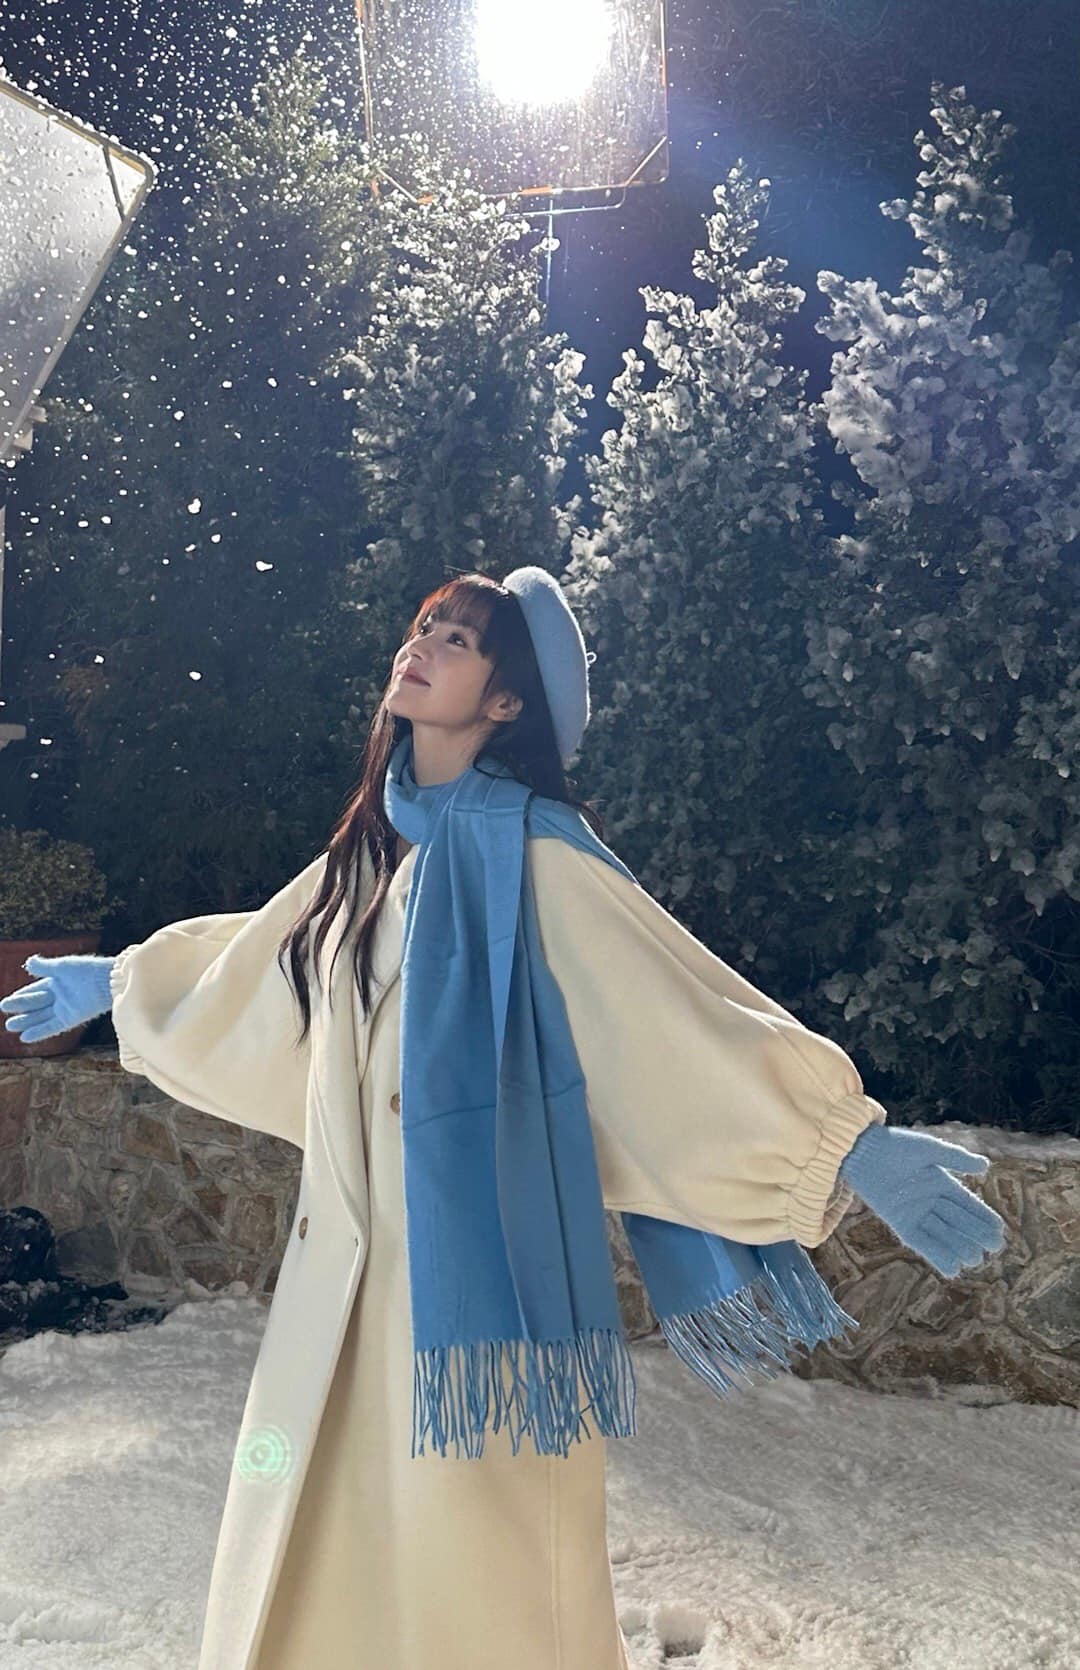 Điền Hi Vi hóa 'cô bé mùa đông' trong bộ ảnh mới, nhan sắc được netizen hết lời khen ngợi  - Ảnh 7